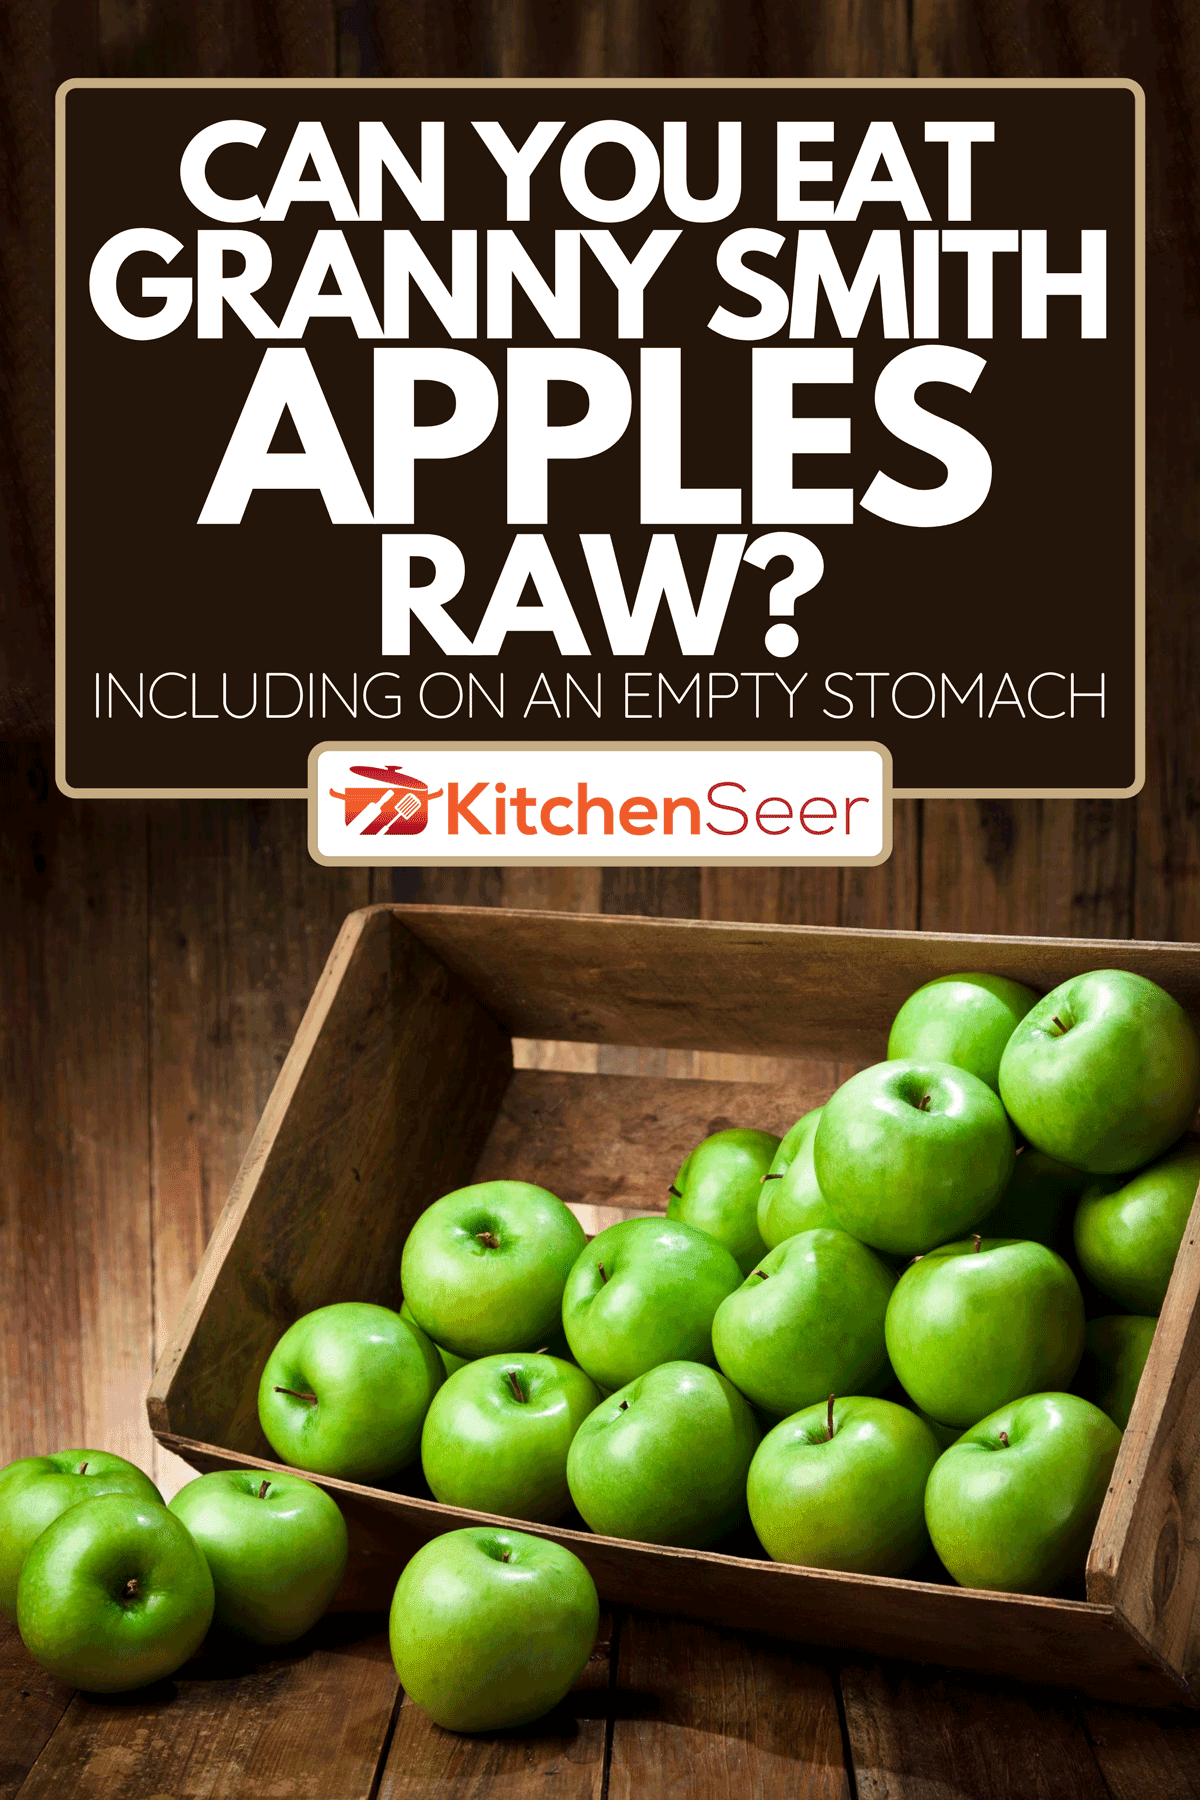 青苹果在乡村木头桌子上一箱,你能生吃奶奶史密斯苹果吗?(包括空腹)